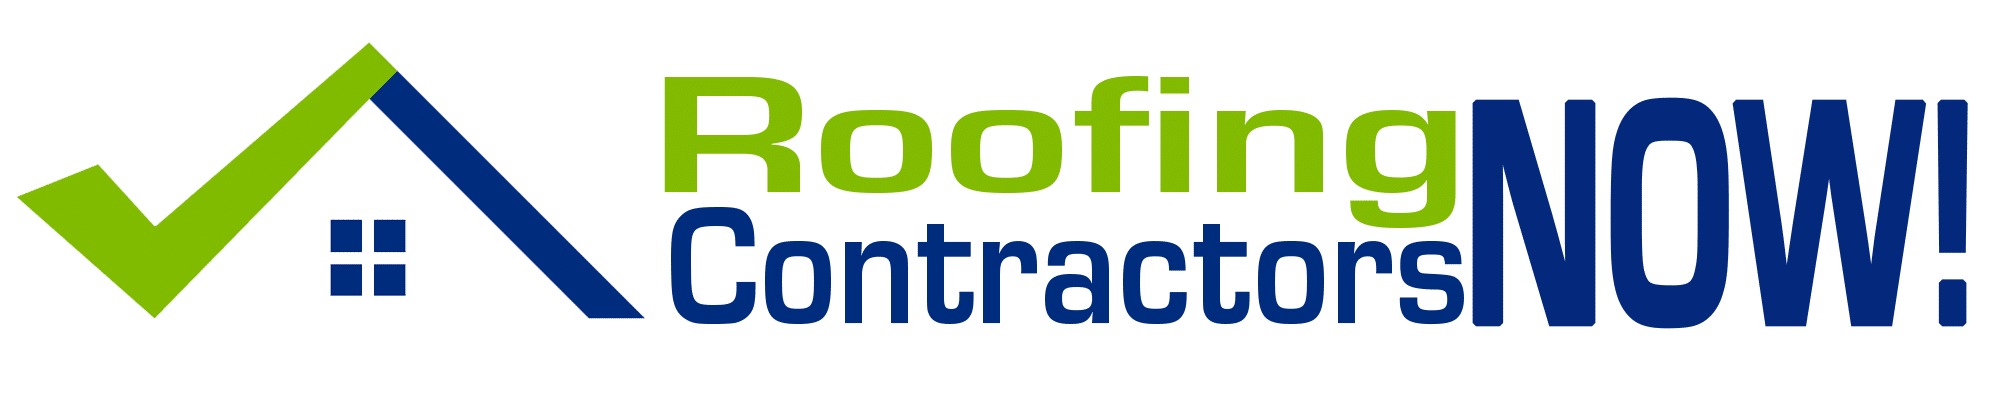 Roofing Contractors Now Logo